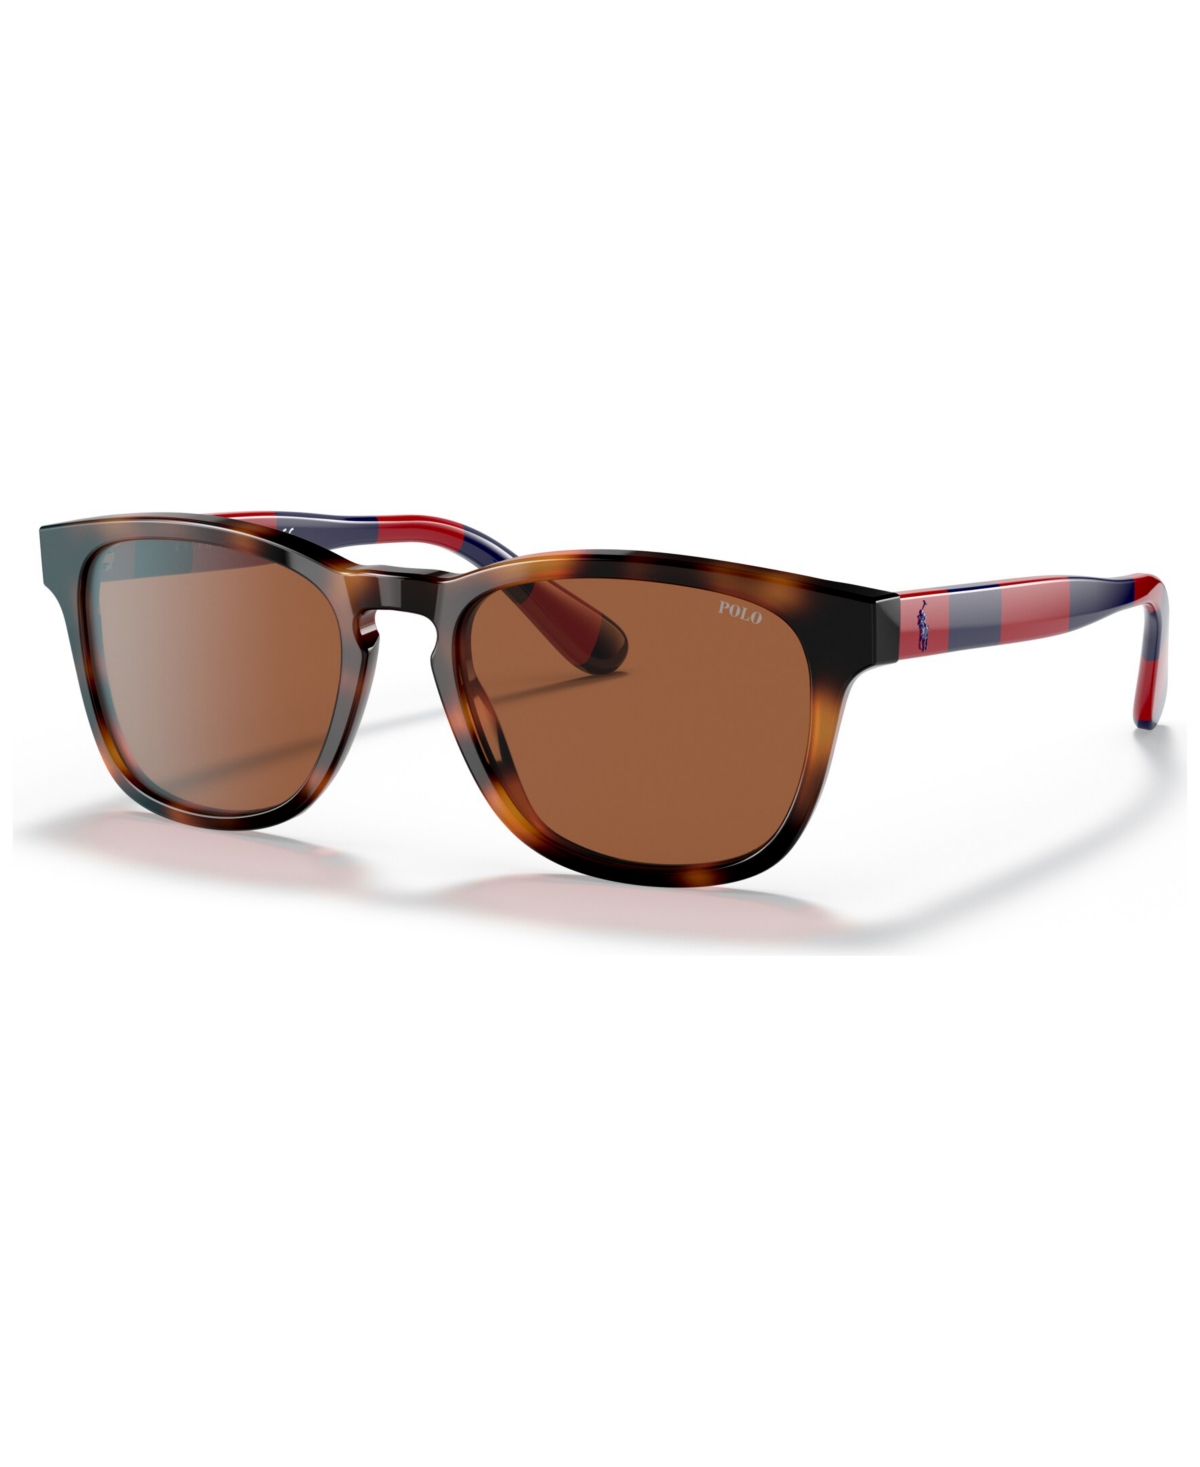 Polo Ralph Lauren Men's Sunglasses, Ph4170 53 In Shiny Jc Tortoise